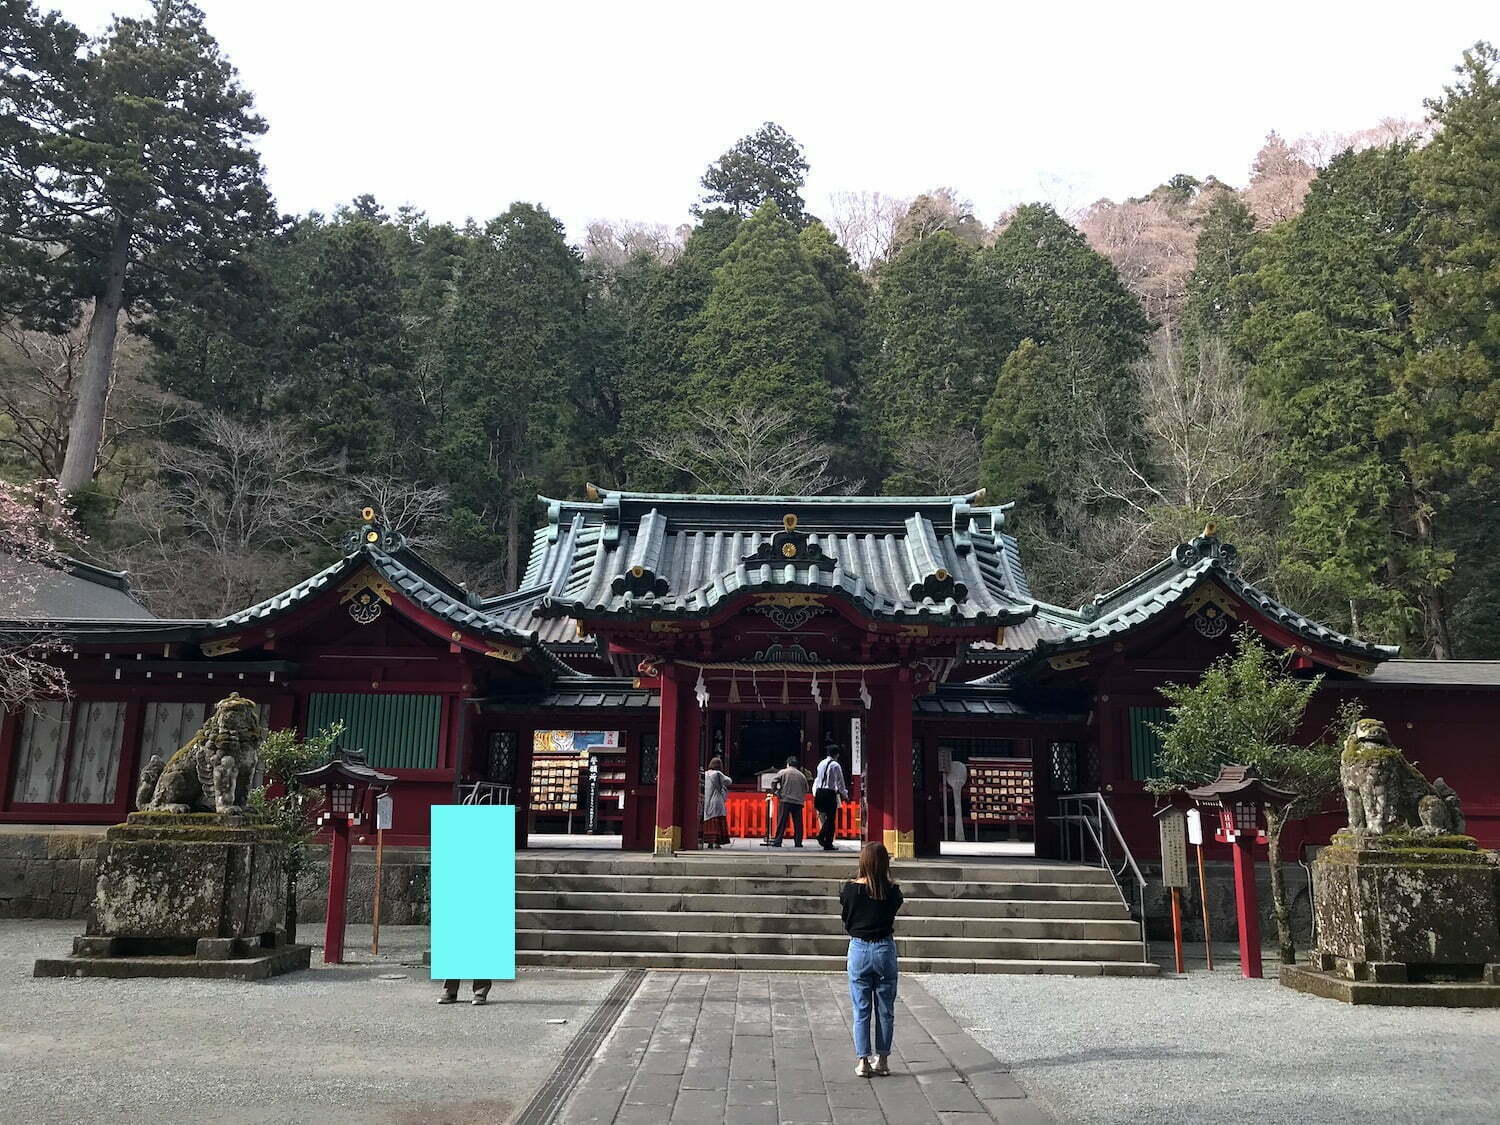 Hakone shrine